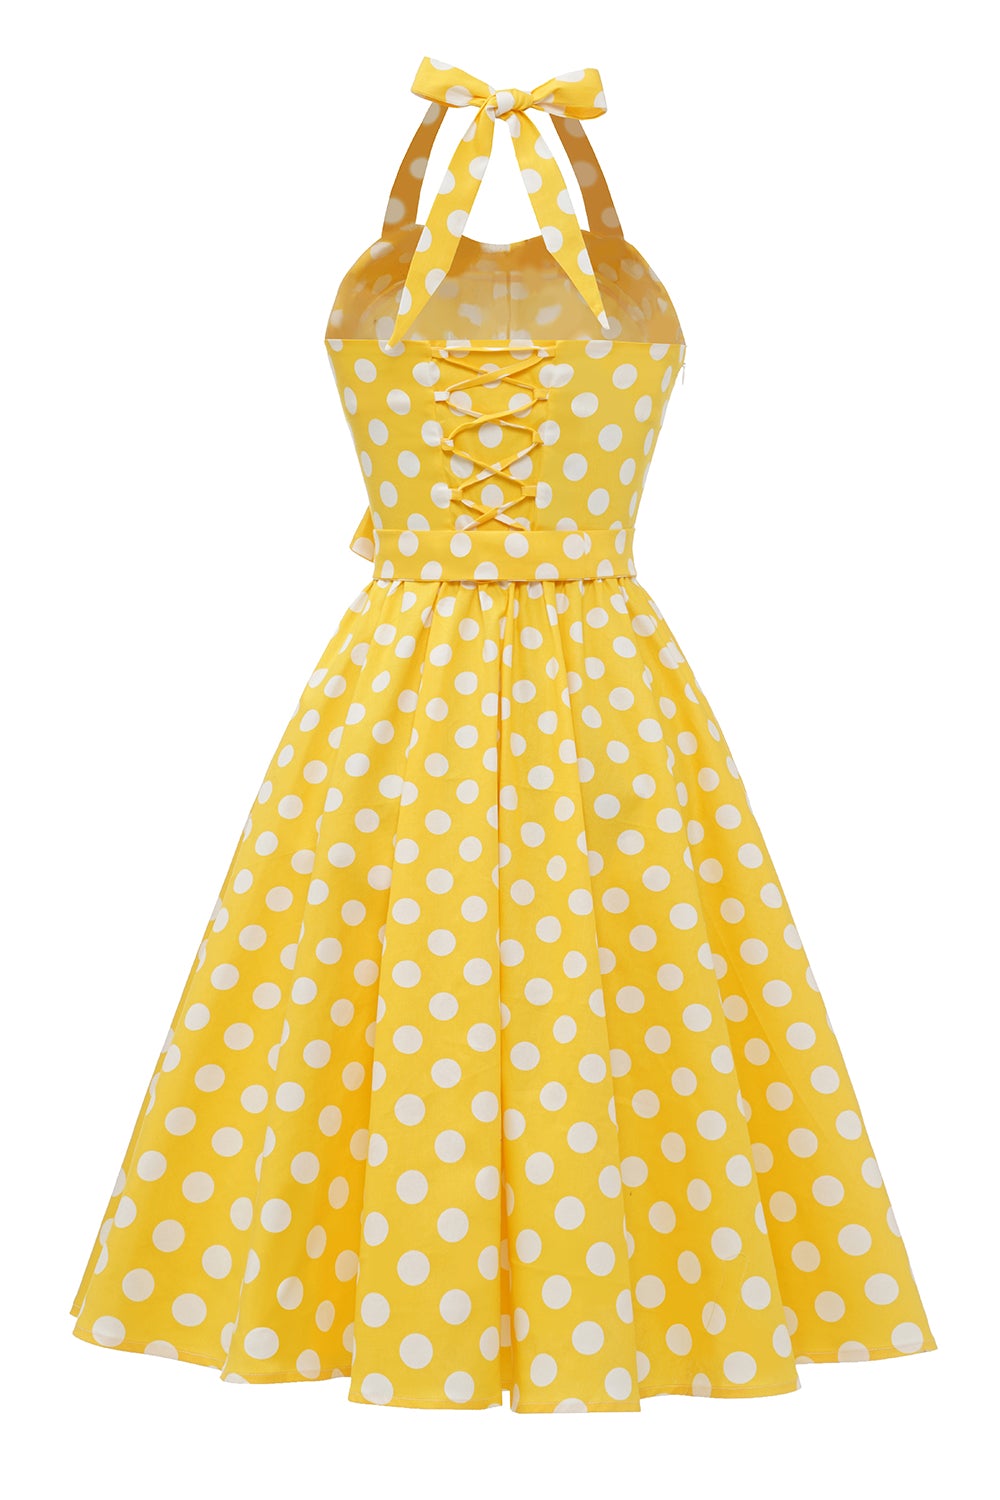 Yellow Polka Dots Pin Up Vintage Dress